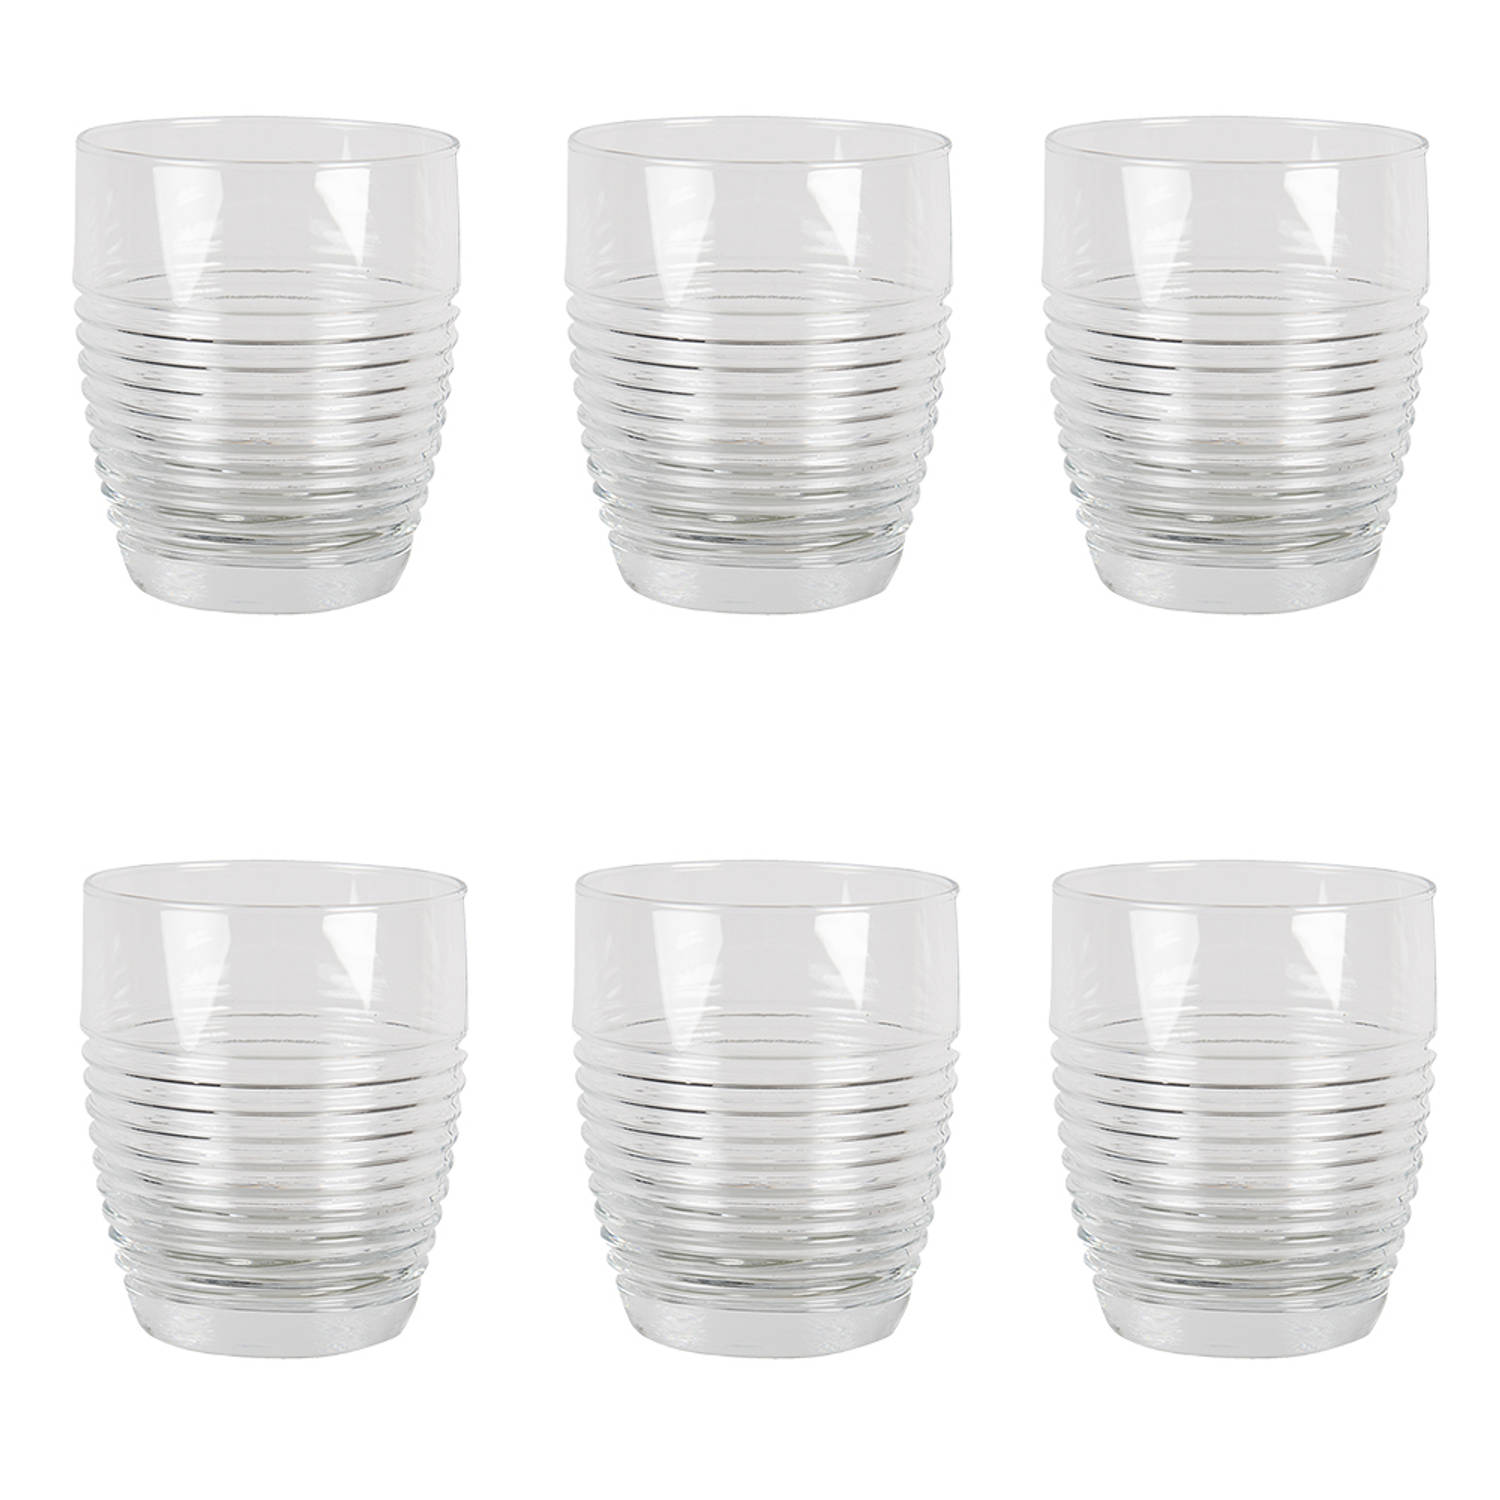 HAES DECO - Waterglas, Drinkglas set van 6 glazen - inhoud glas 300 ml - formaat glas Ø 8x10 cm - Waterglazen, Drinkglazen